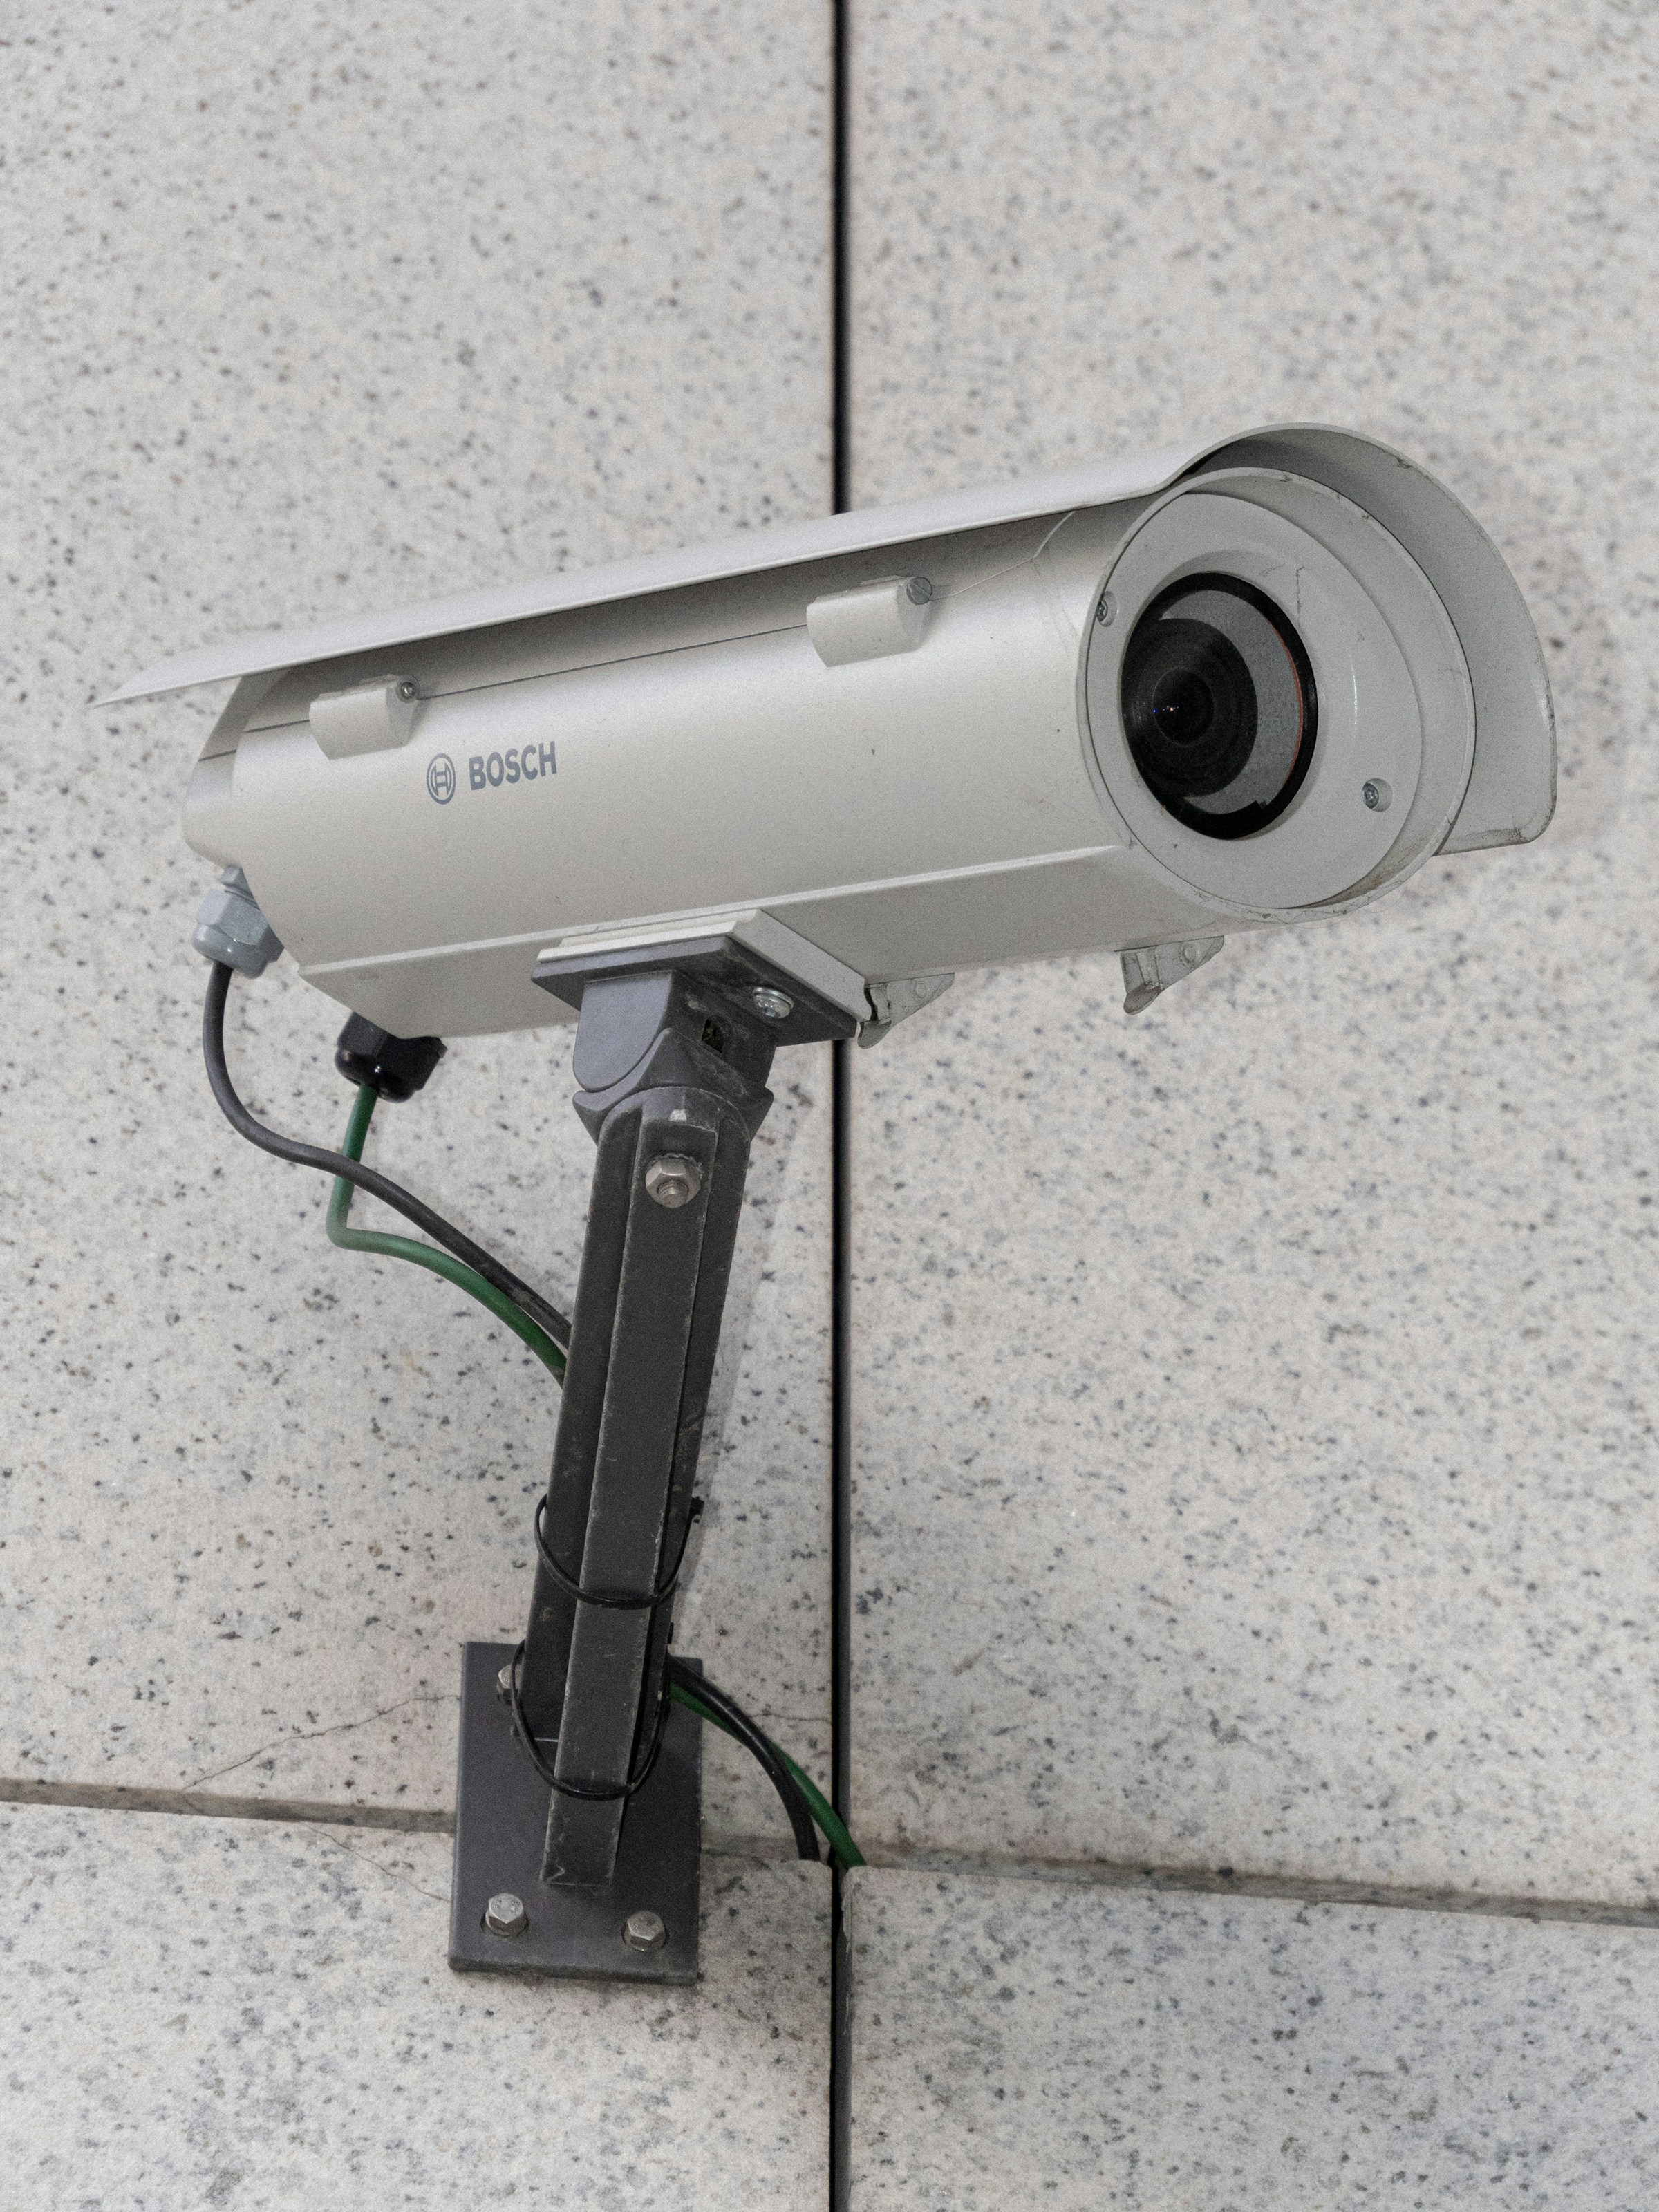 CCTV camera | Source: Unsplash